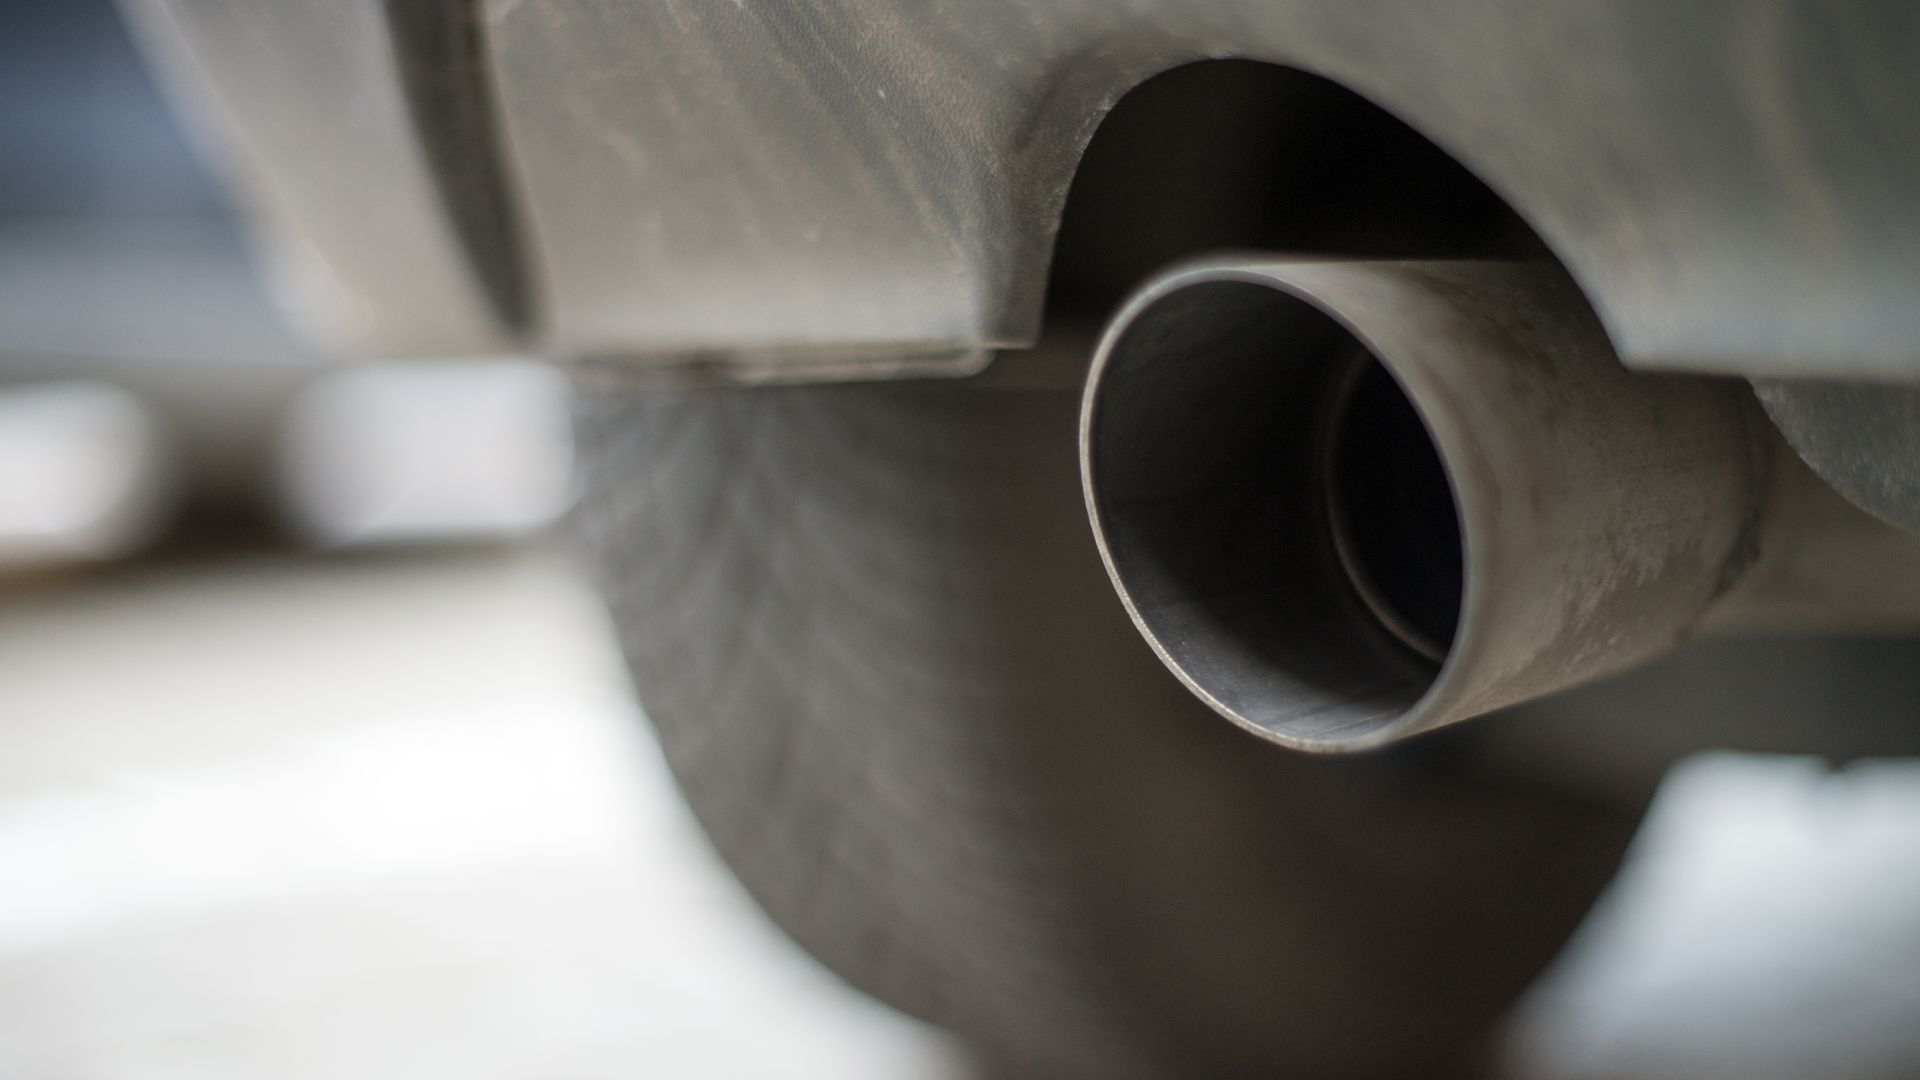 Drivers oppose diesel ban